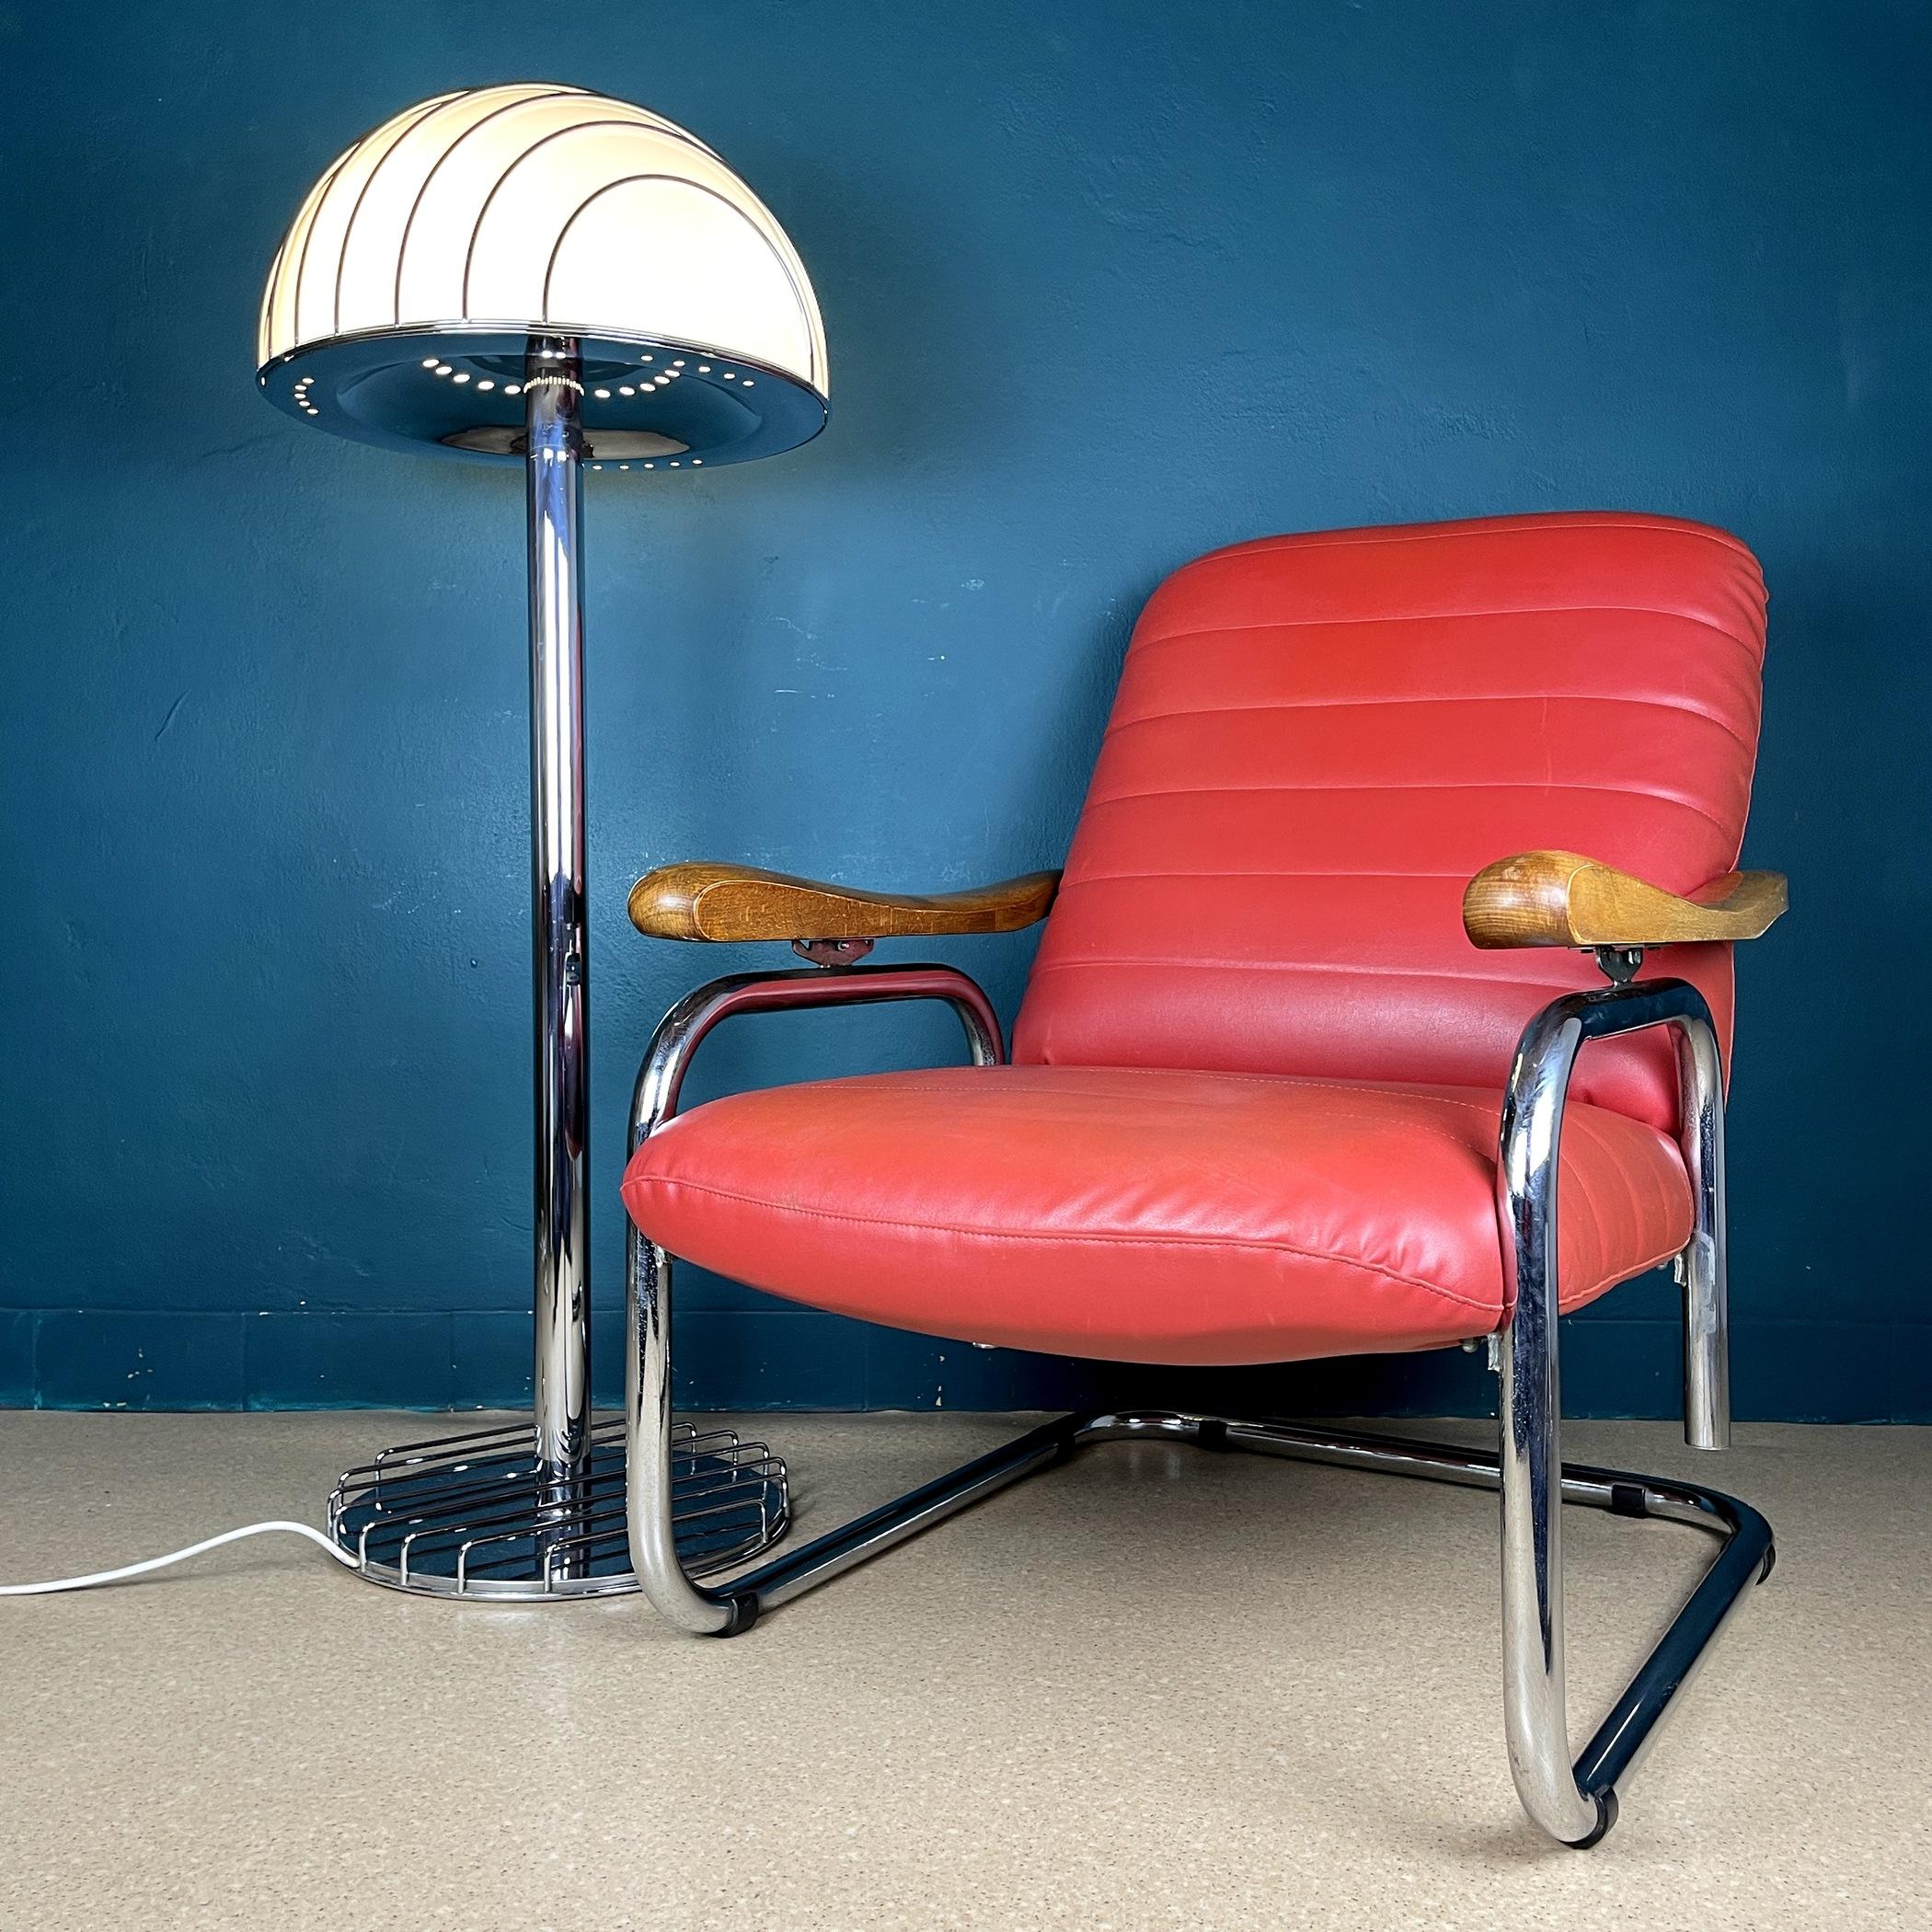 Vintage By est une extraordinaire chaise vintage des années 1970 en Italie. Cette pièce de production industrielle italienne témoigne non seulement d'un design exceptionnel, mais offre également une expérience d'assise exceptionnellement